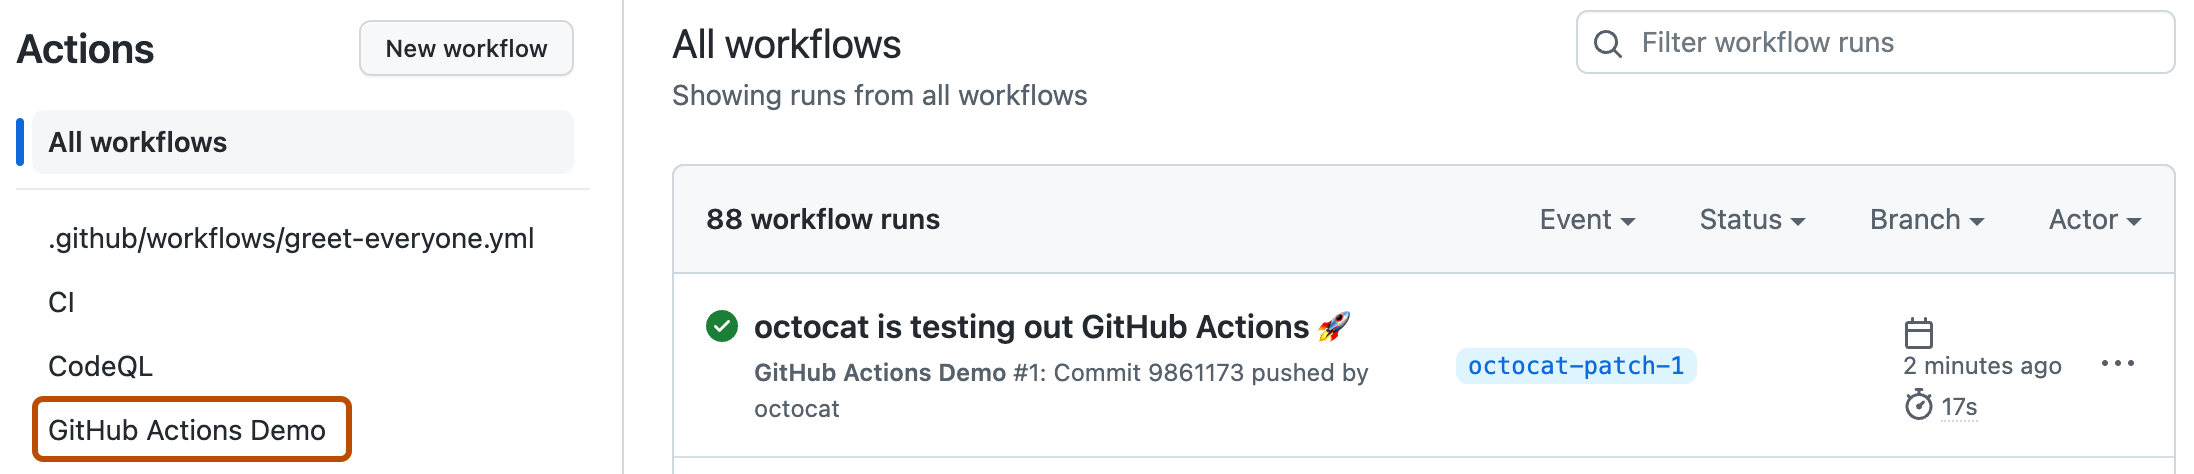 Captura de pantalla de la página "Acciones". El nombre del flujo de trabajo de ejemplo, "Demostración de las acciones de GitHub", se resalta con un contorno naranja oscuro.